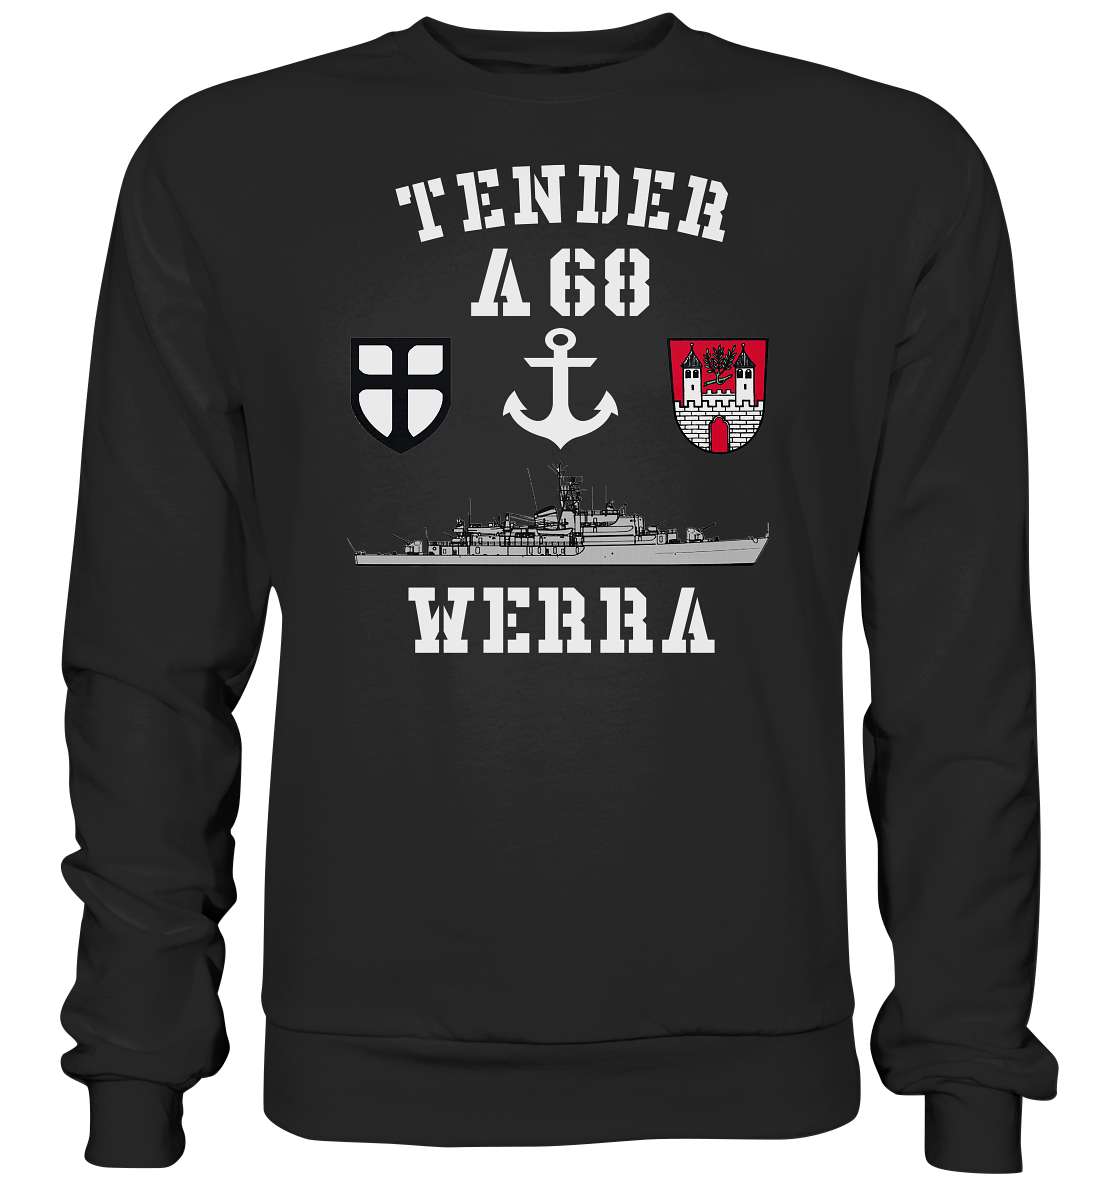 Tender A68 WERRA 7.SG Anker - Premium Sweatshirt